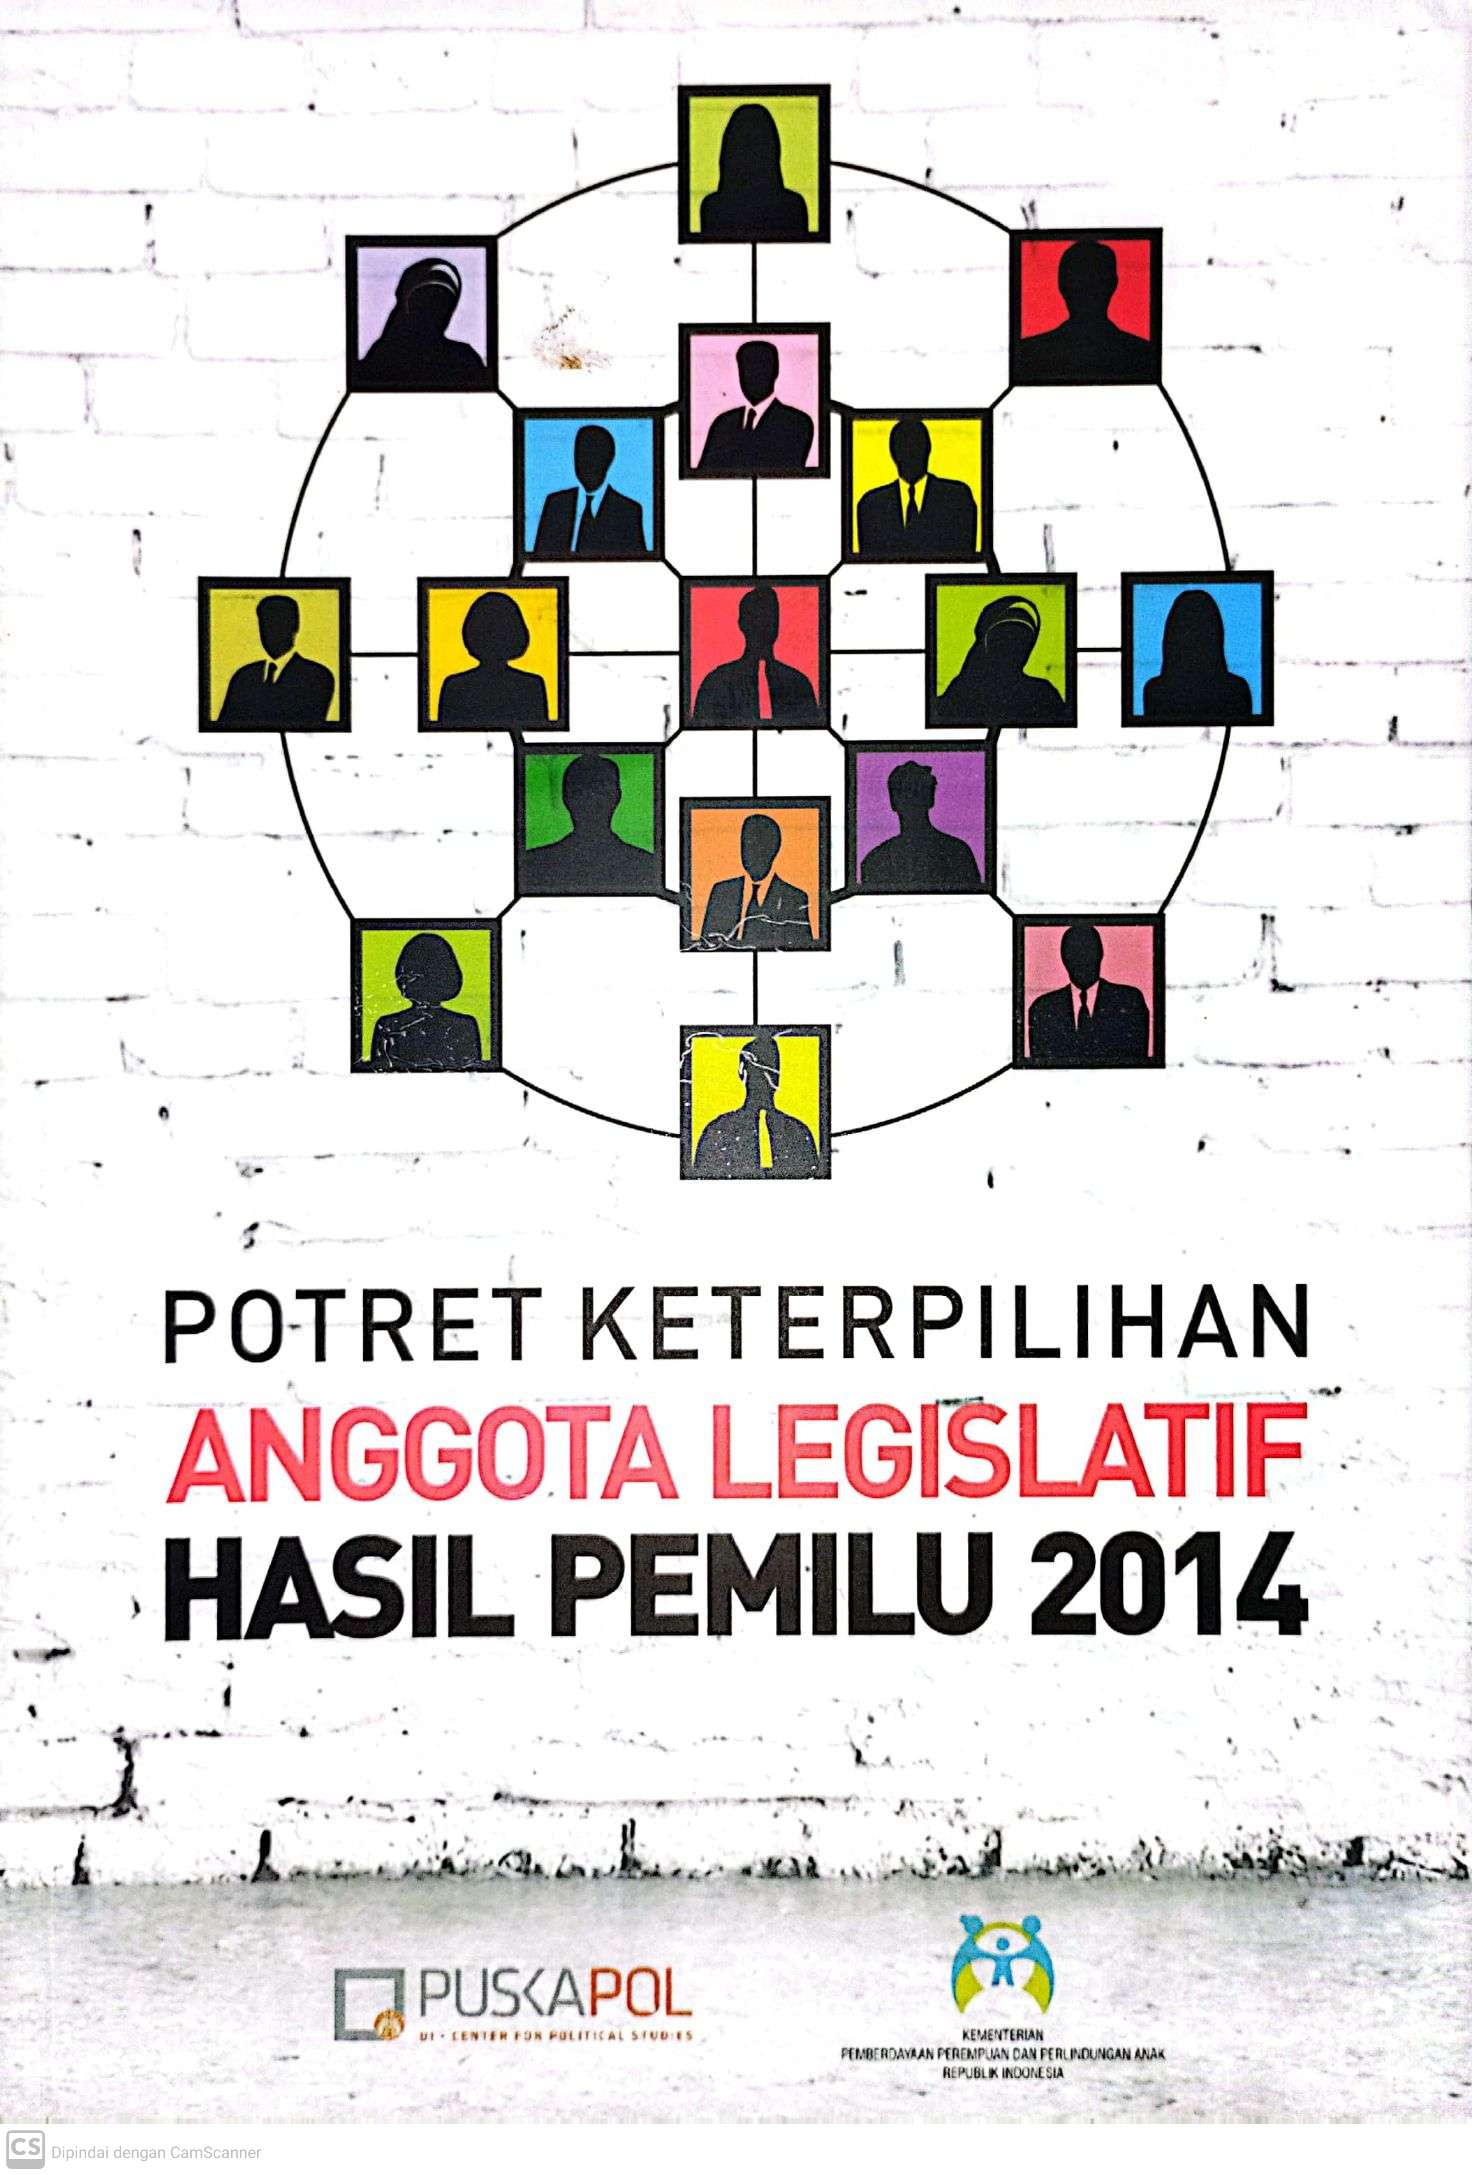 Potret Keterpilihan Anggota Legislatif Hasil Pemilu 2014